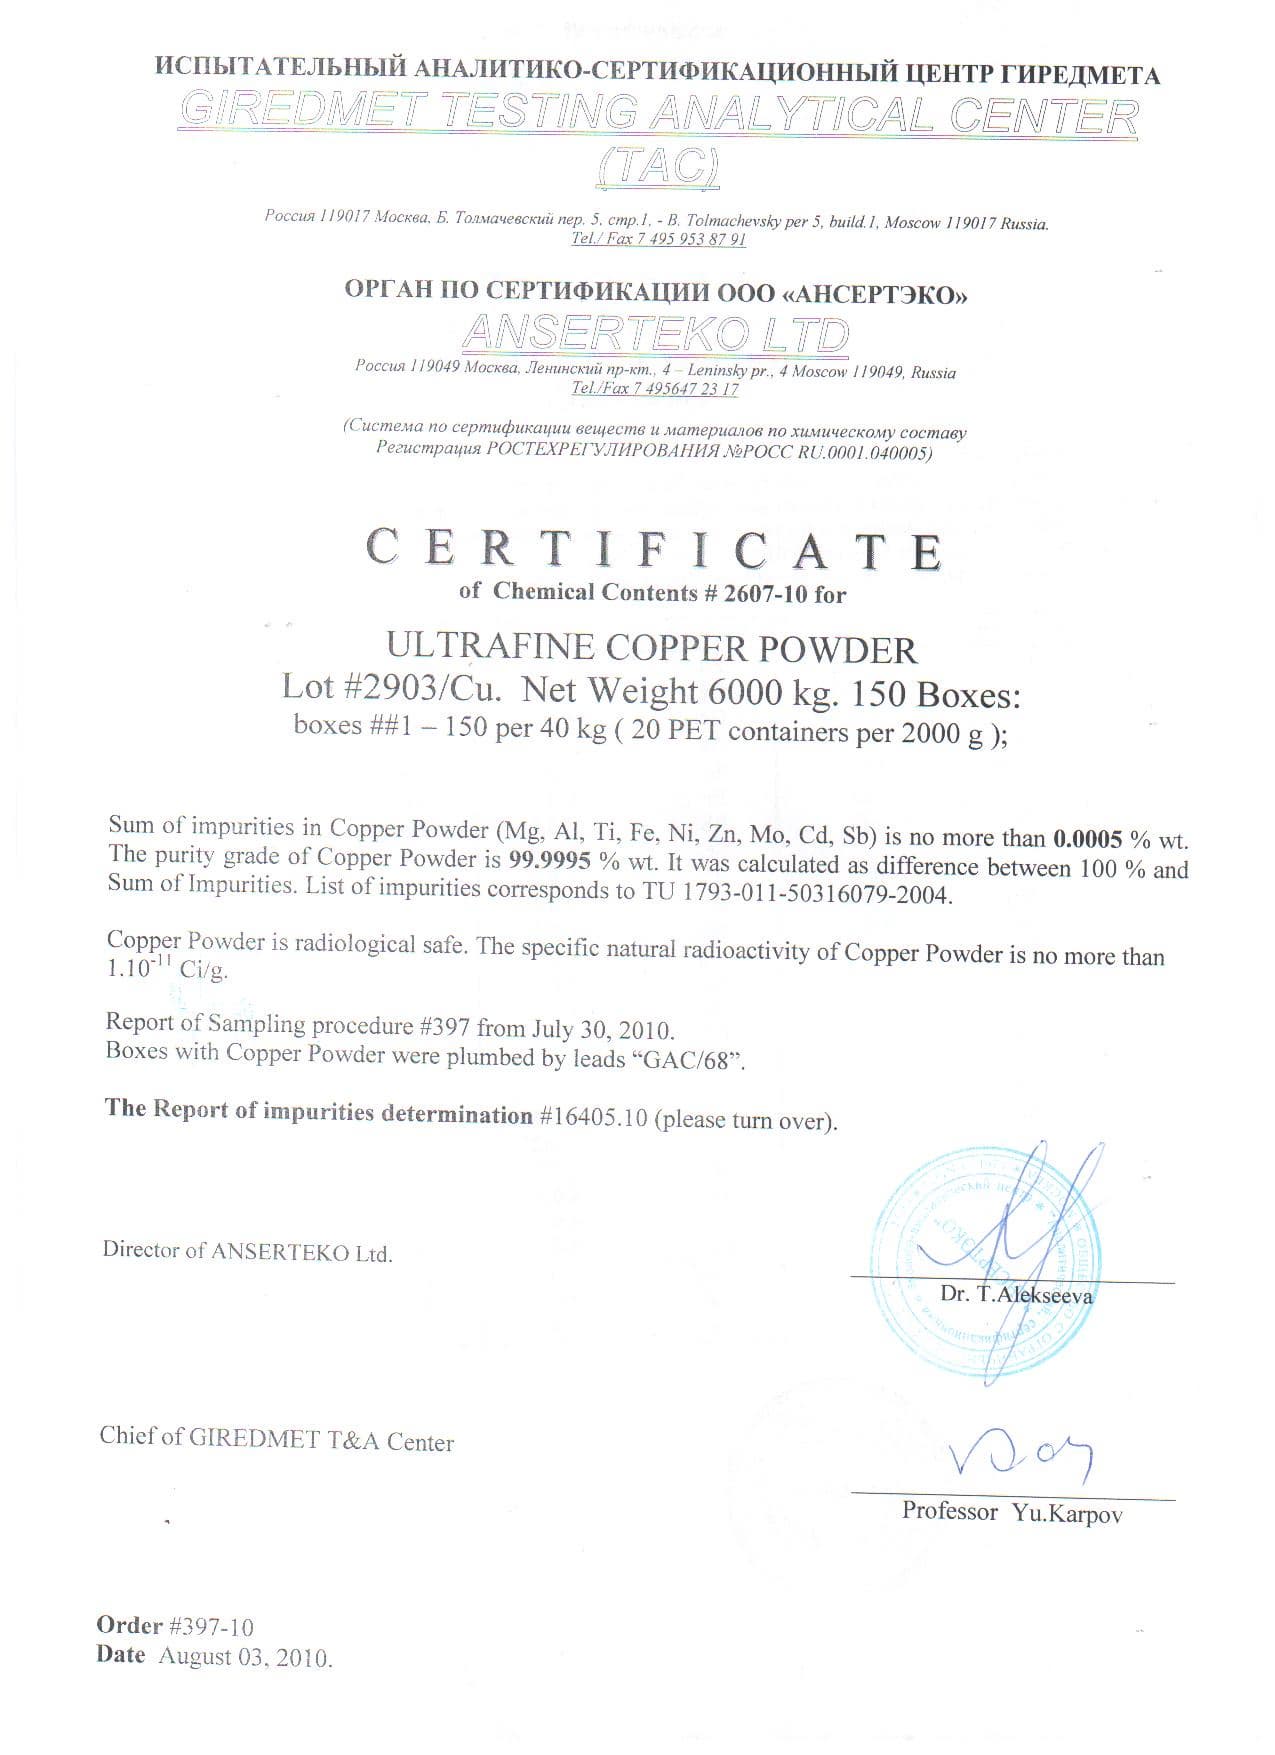 ULTRAFINE COPPER POWDER TYPE PMU  CU 63 & CU 65